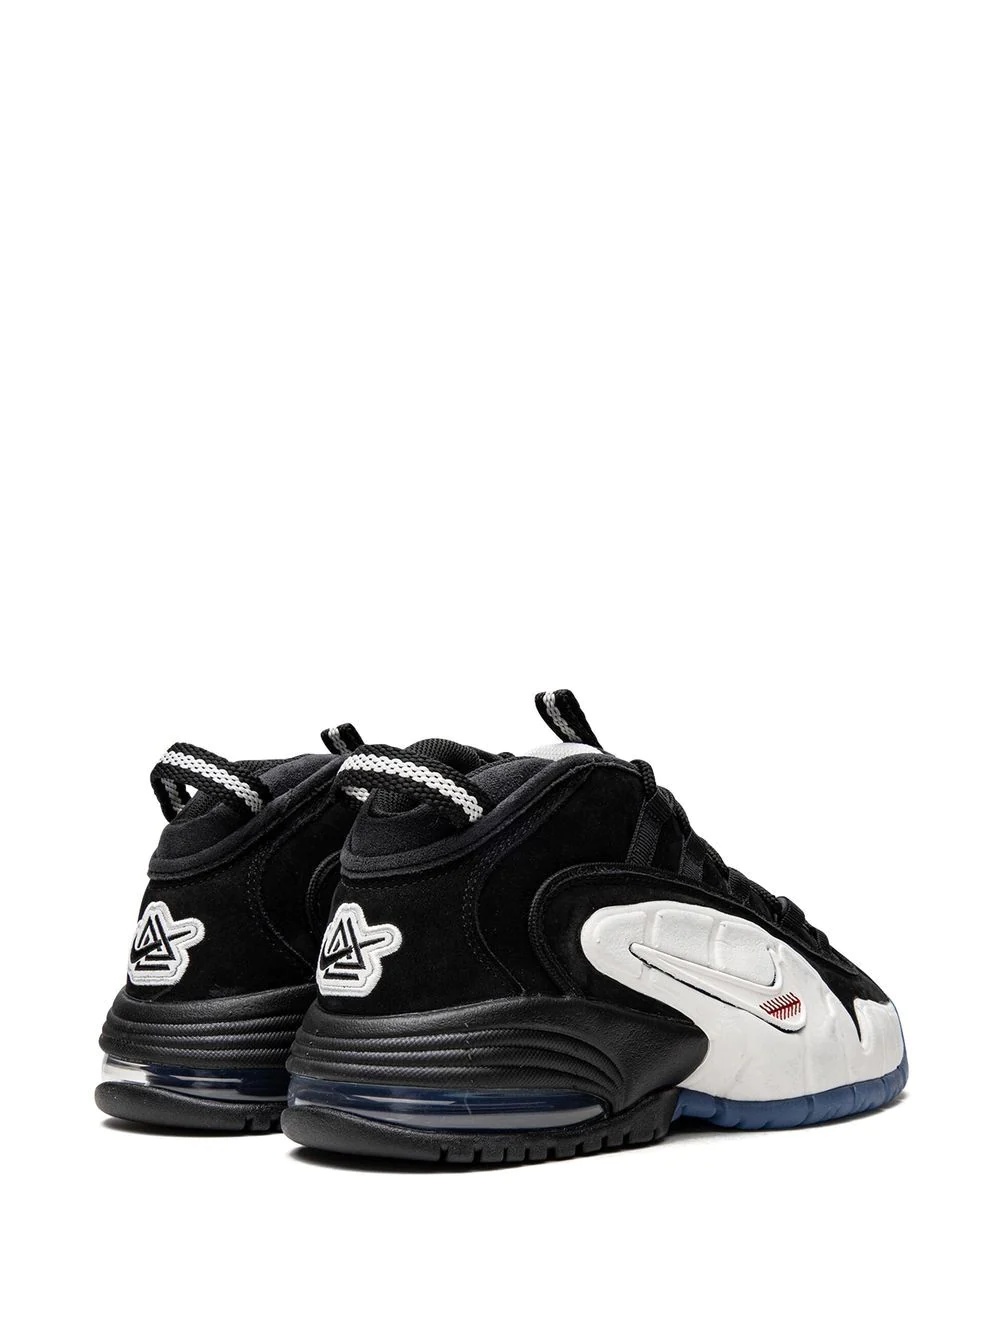 x Social Status Air Max Penny 1 "Recess Black" sneakers - 3